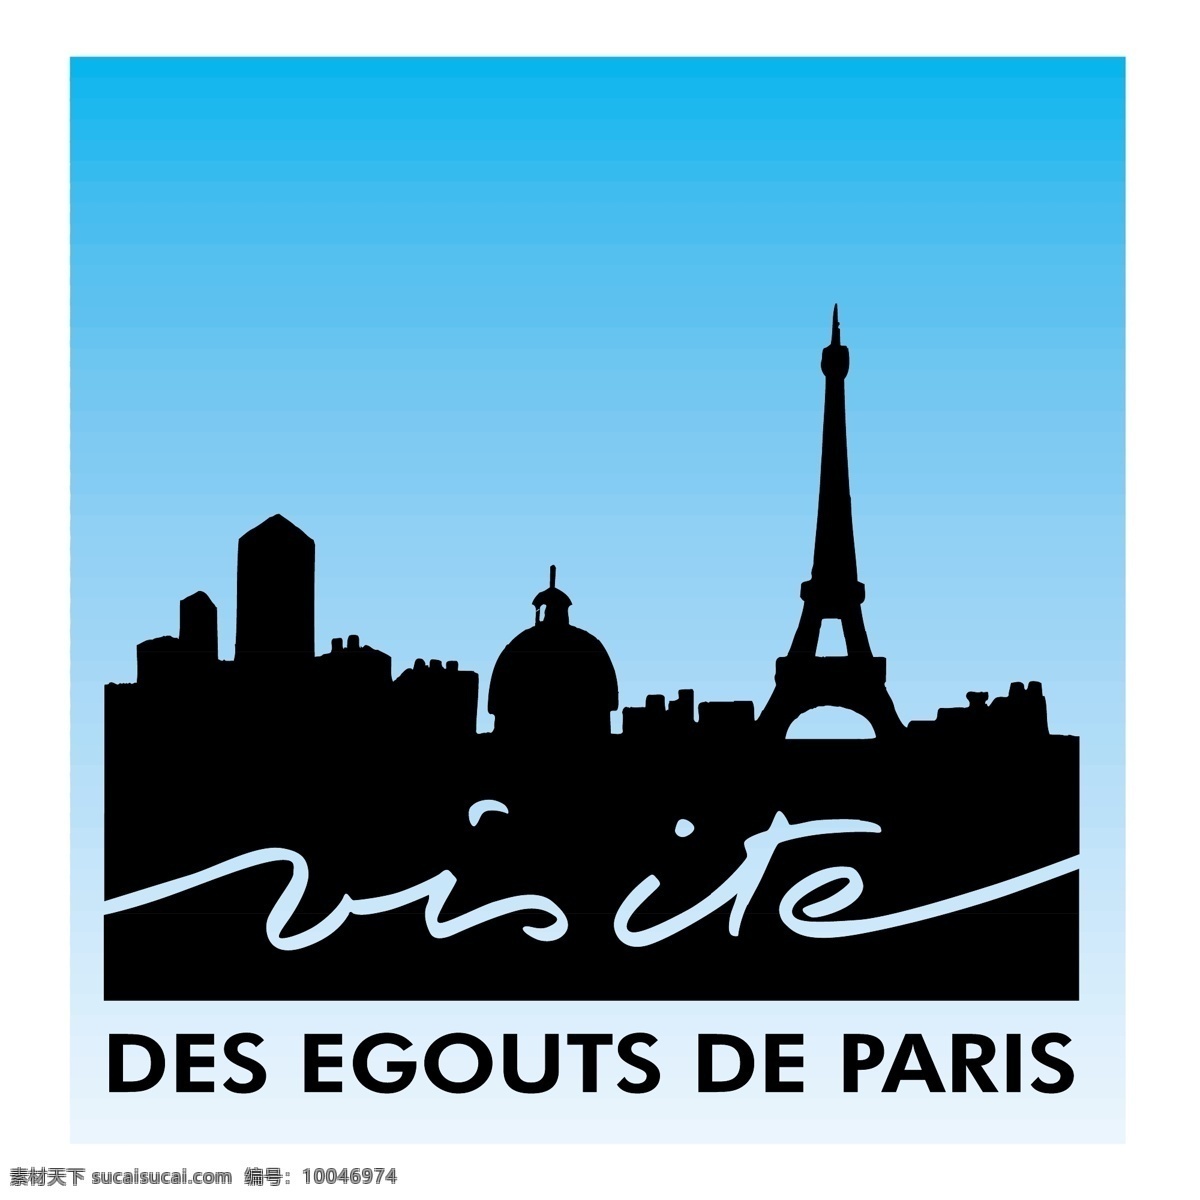 des egouts de巴黎 矢量标志下载 免费矢量标识 商标 品牌标识 标识 矢量 免费 品牌 公司 白色